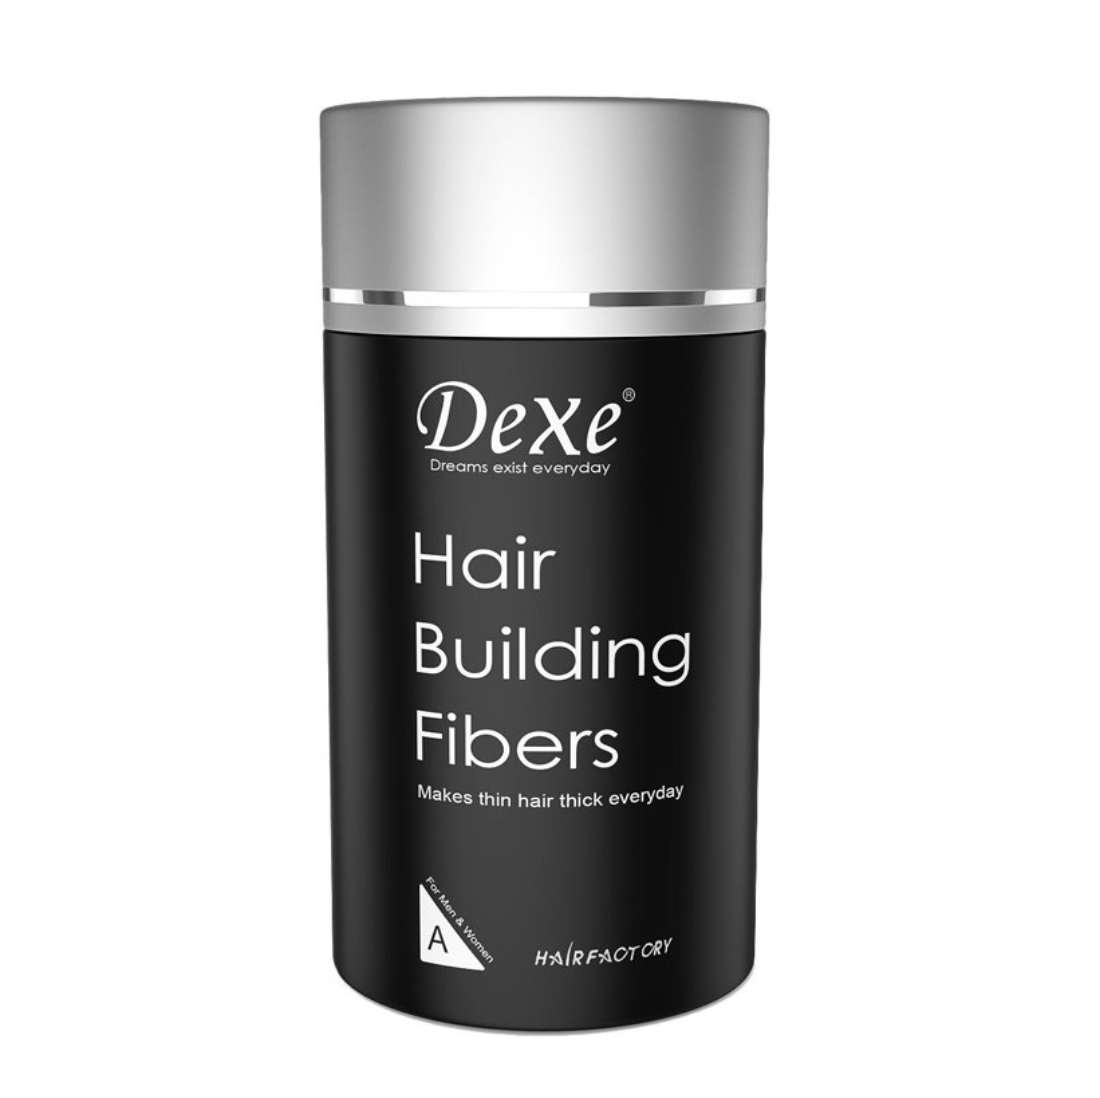 Dexe Hair Building Fibers Dark Brown 22g